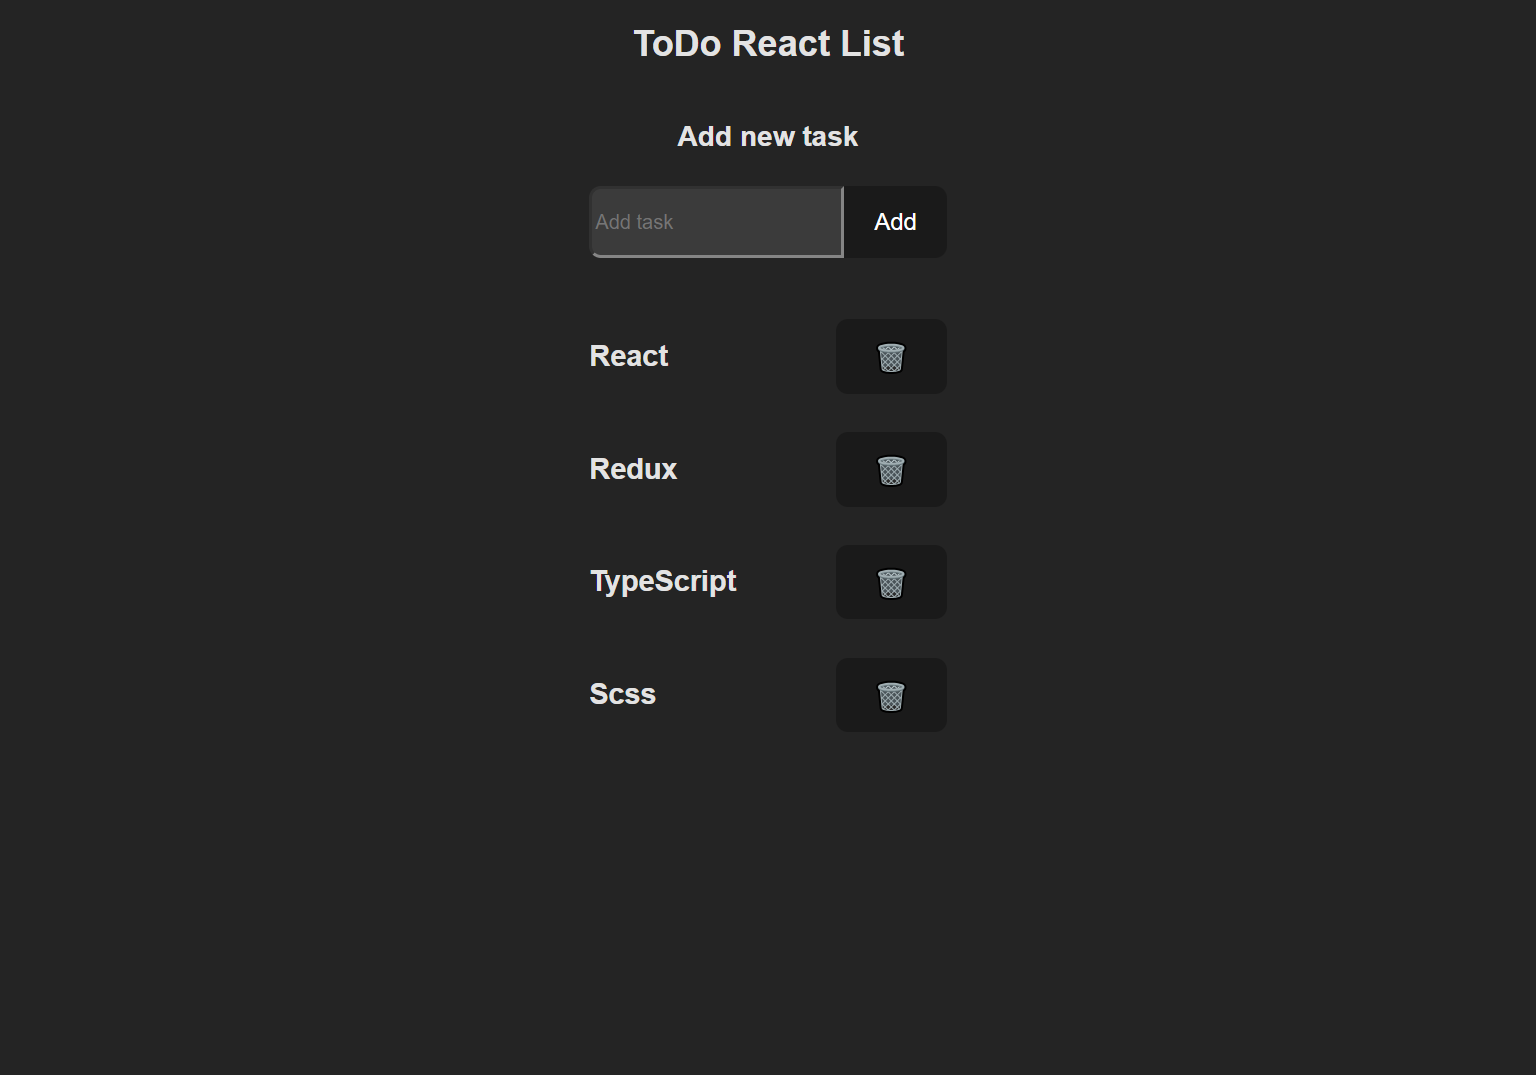 ToDo React List